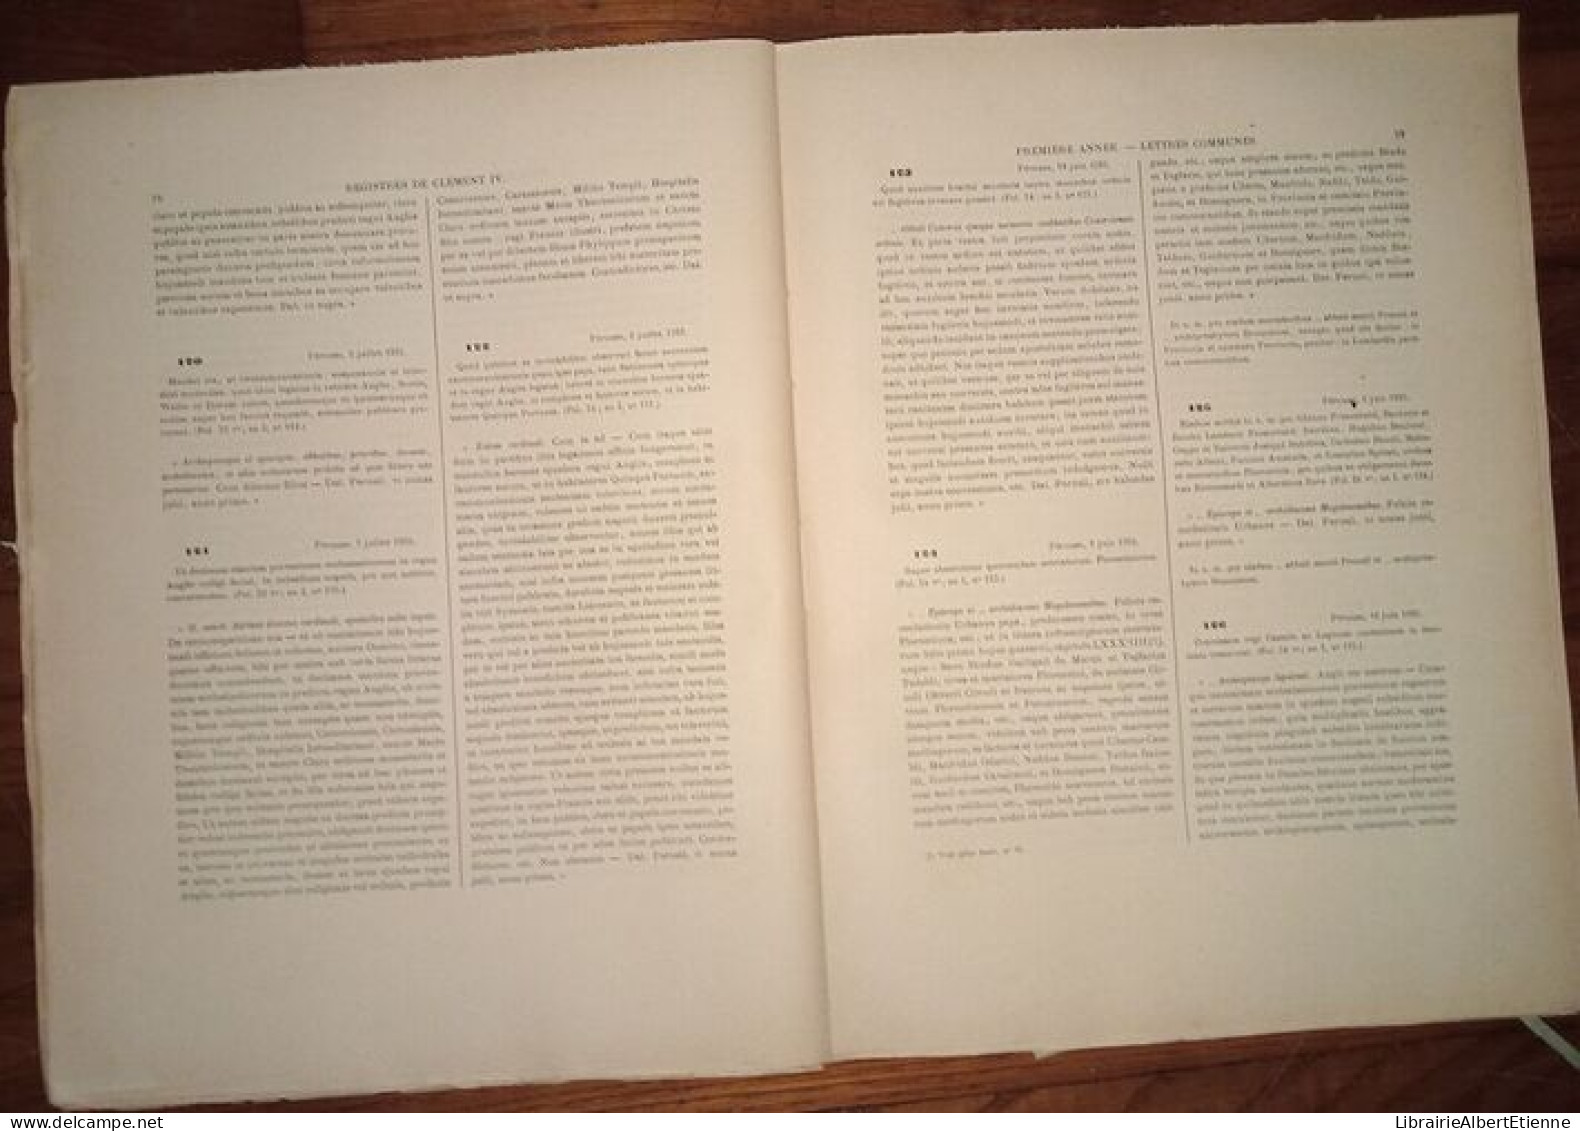 Les Registres De Clément IV (1265-1268) Recueil Des Bulles De Ce Pape Publiées Ou Analysées D'après Les Manuscrits Origi - Esoterik